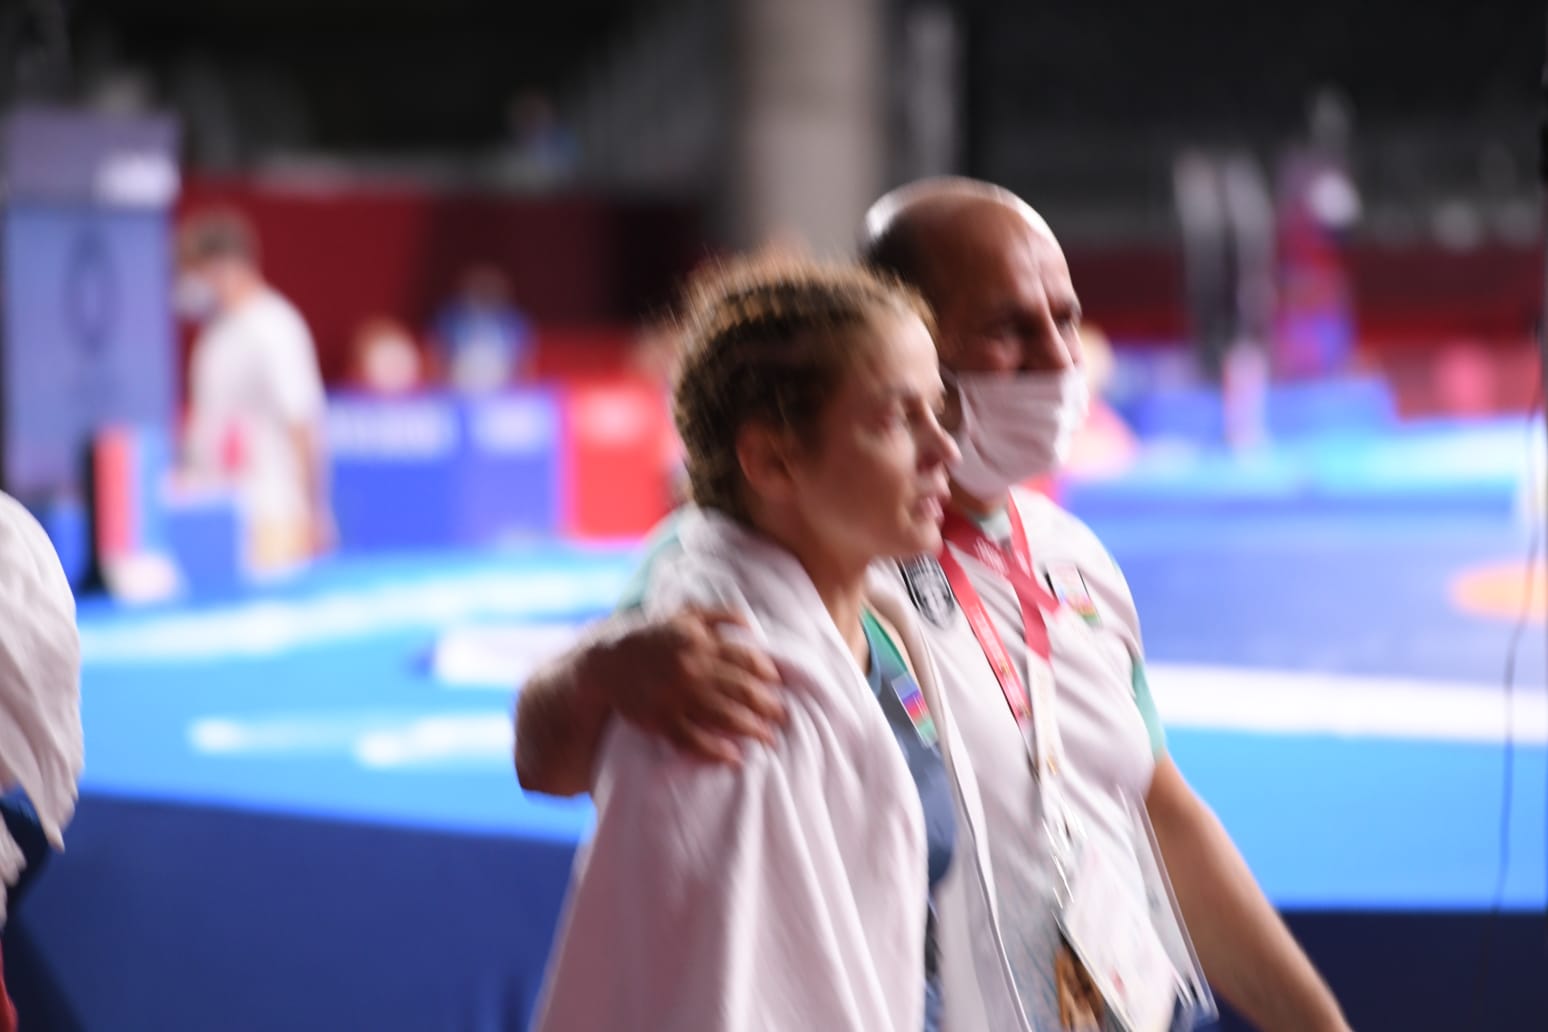 Mariya Stadnik Tokiodan bürünc medalla qayıdır